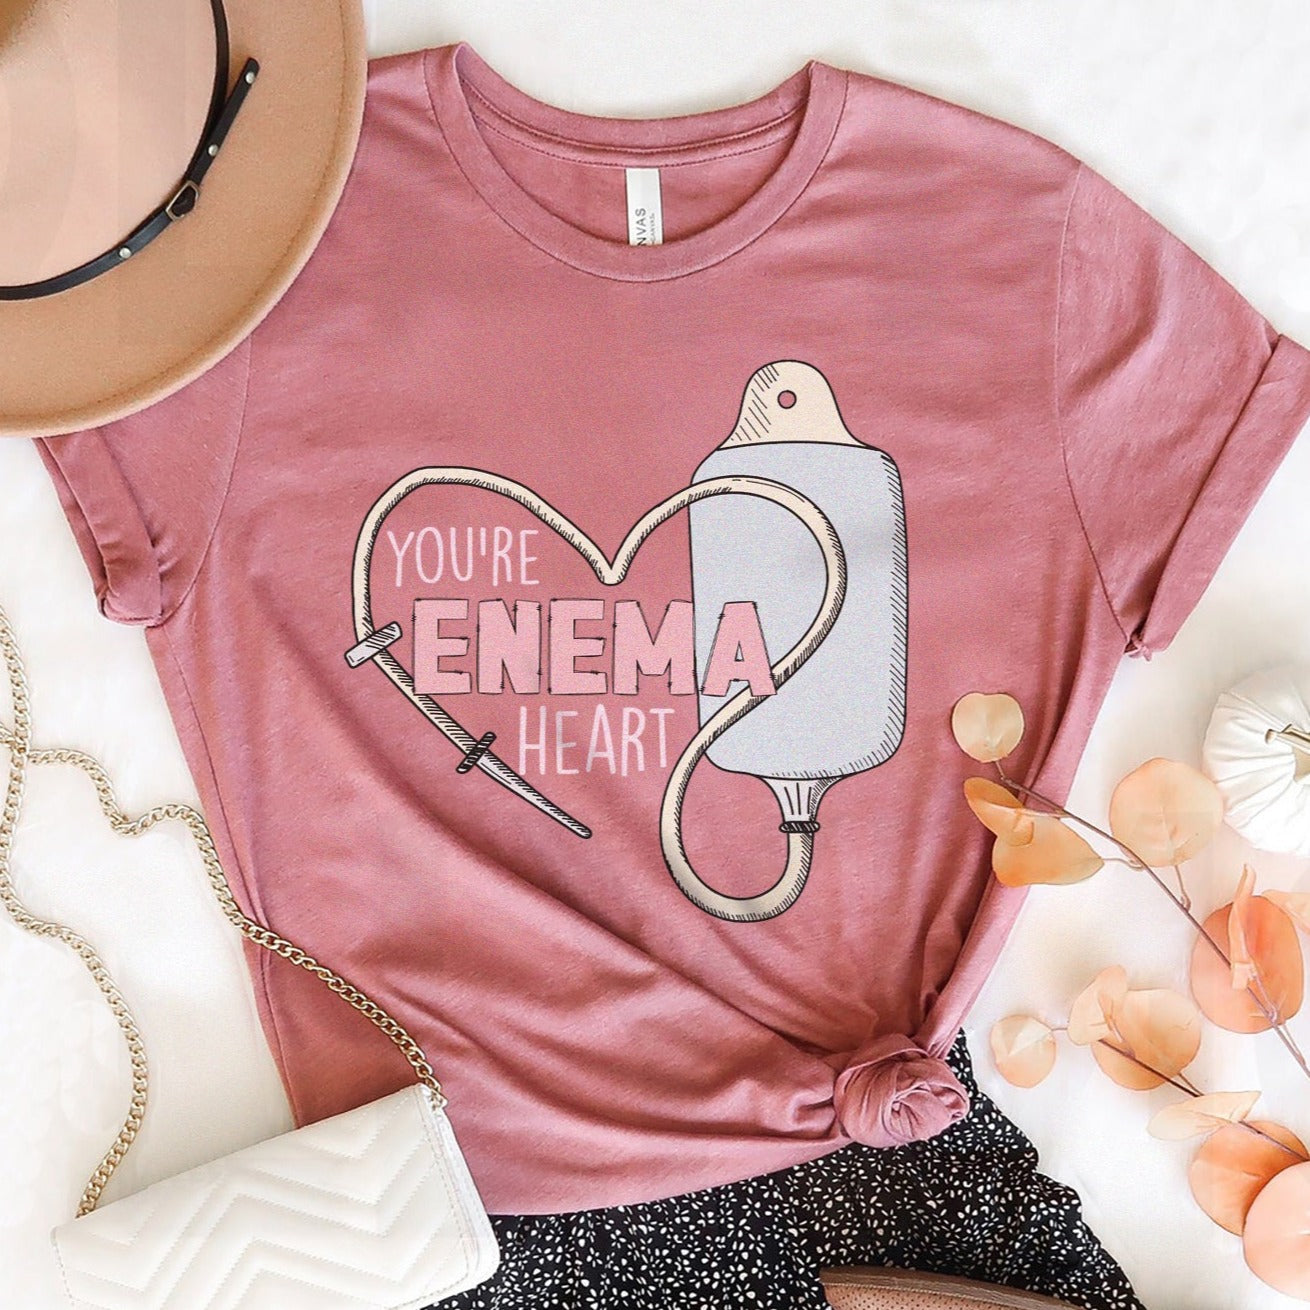 You're Enema Heart T-Shirt